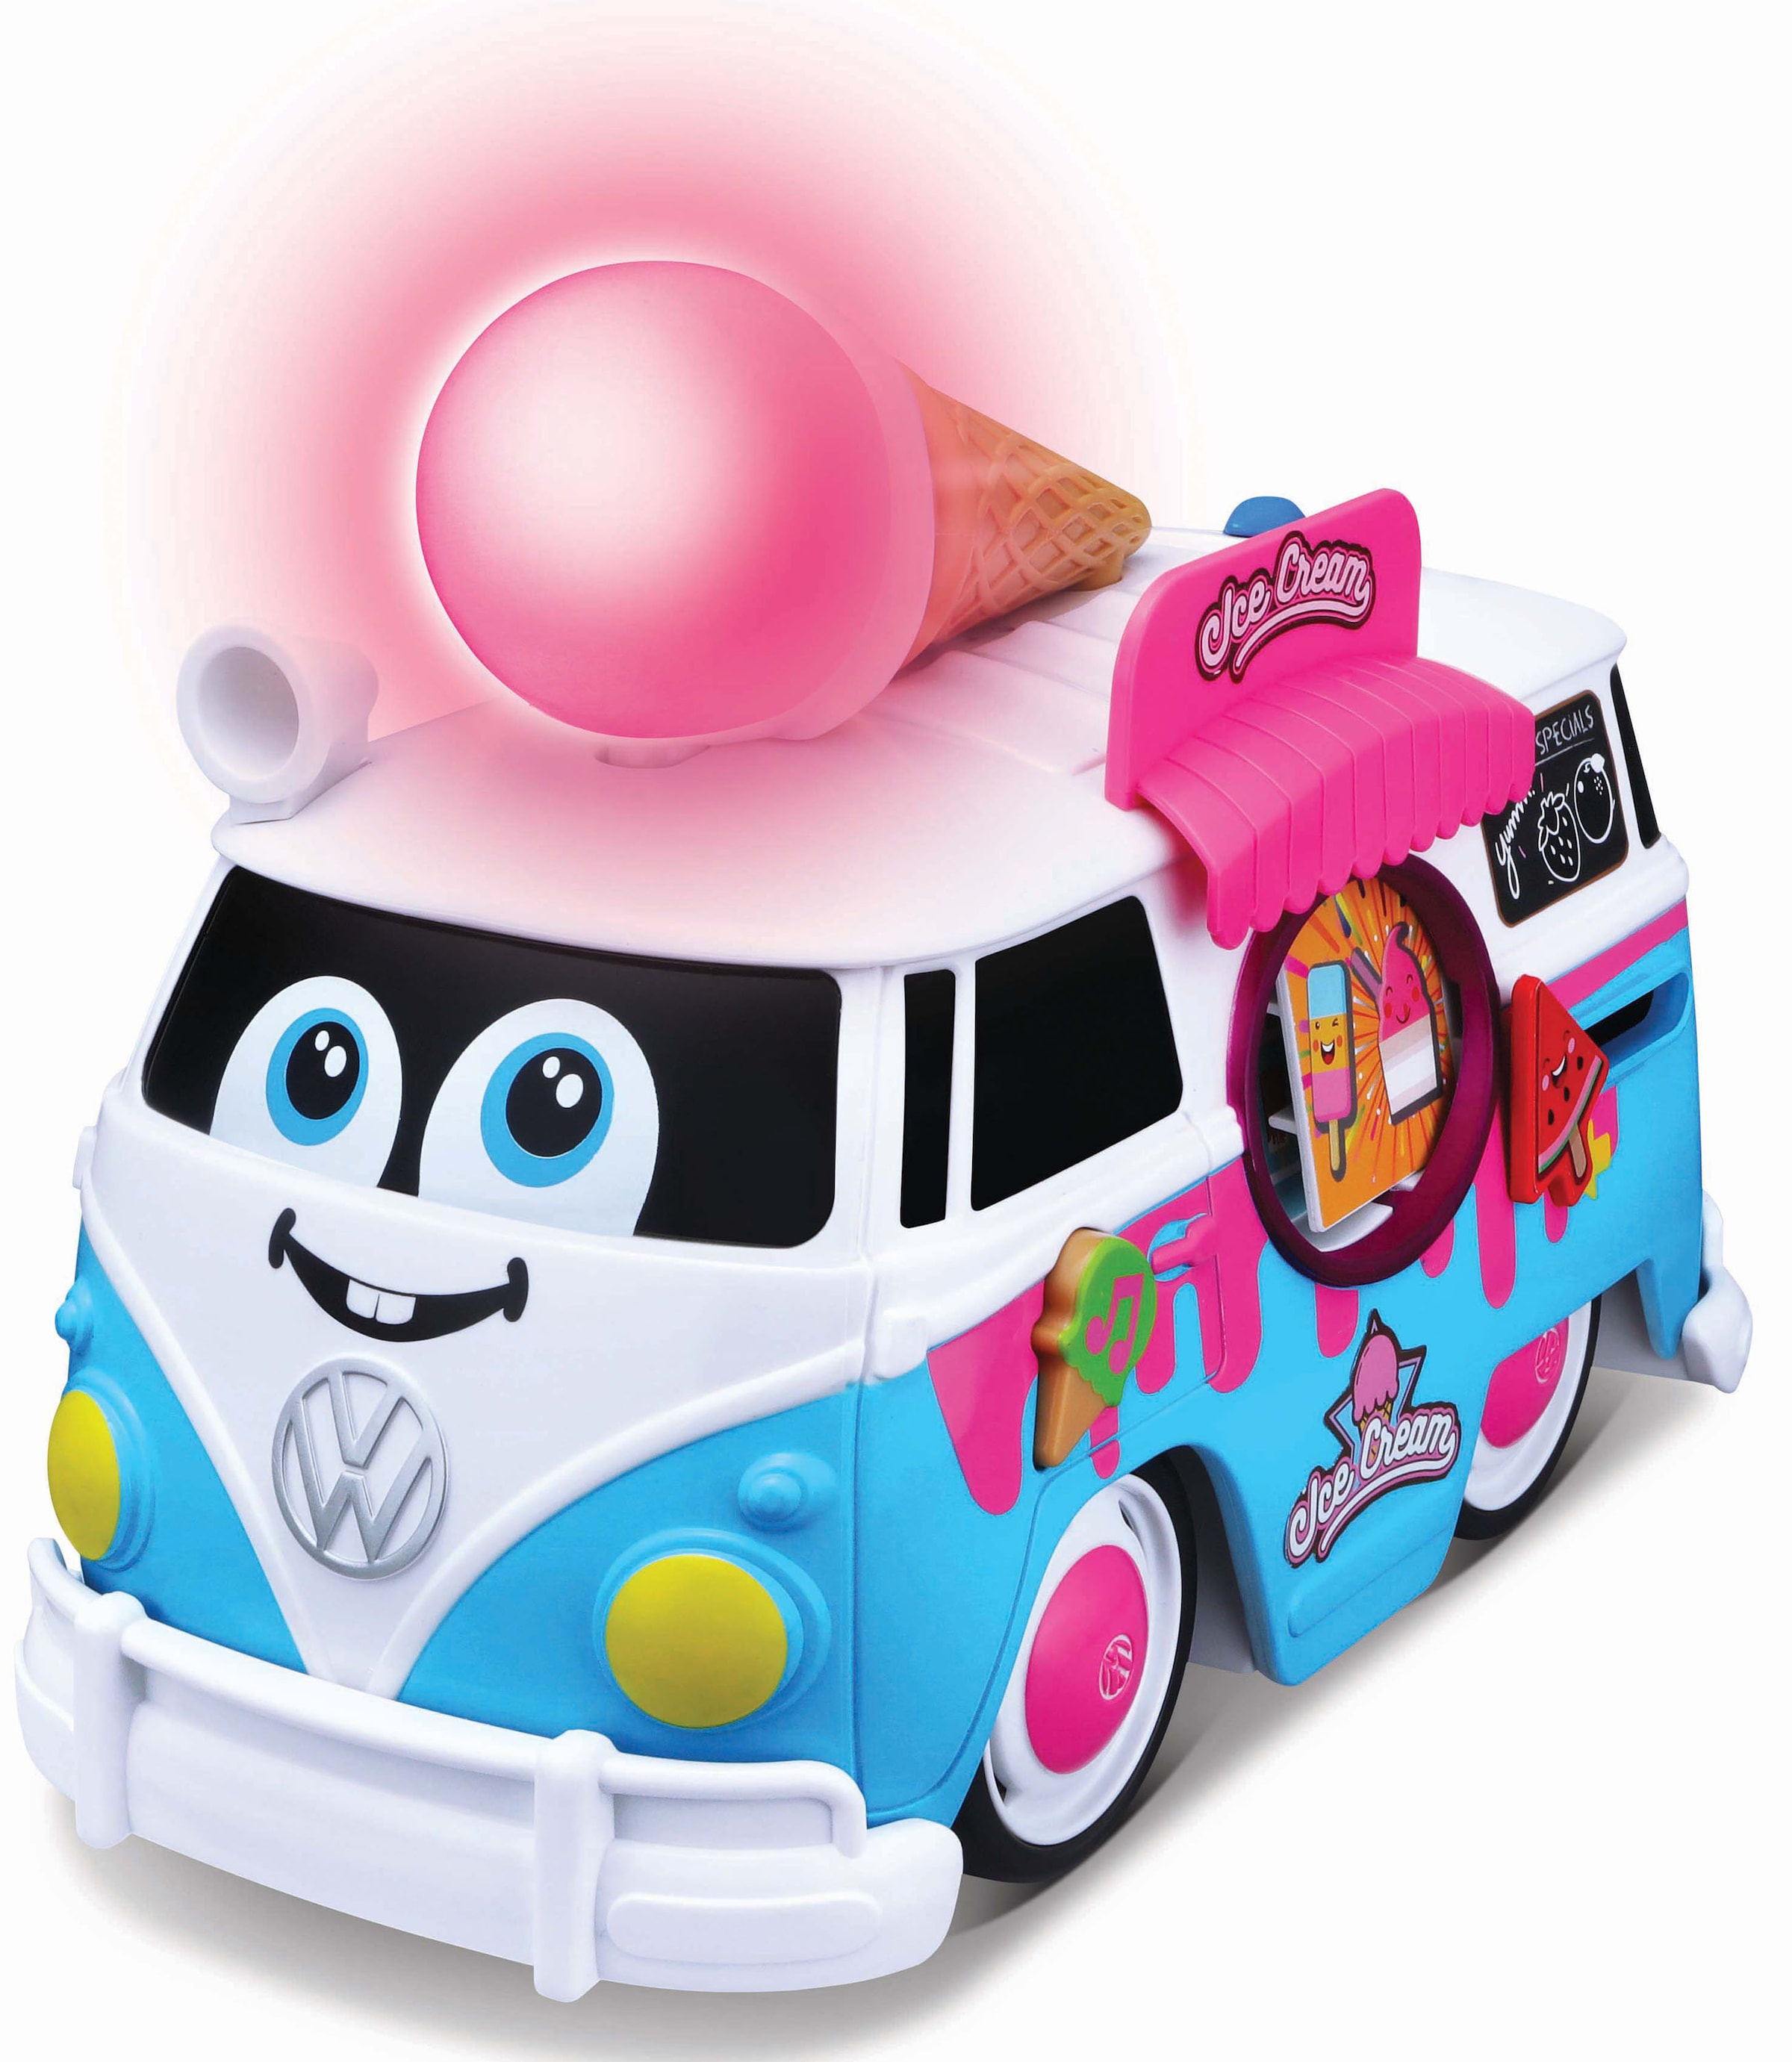 Spielzeug-Bus »VW Magic Ice Cream Bus«, mit Licht- und Soundeffekten